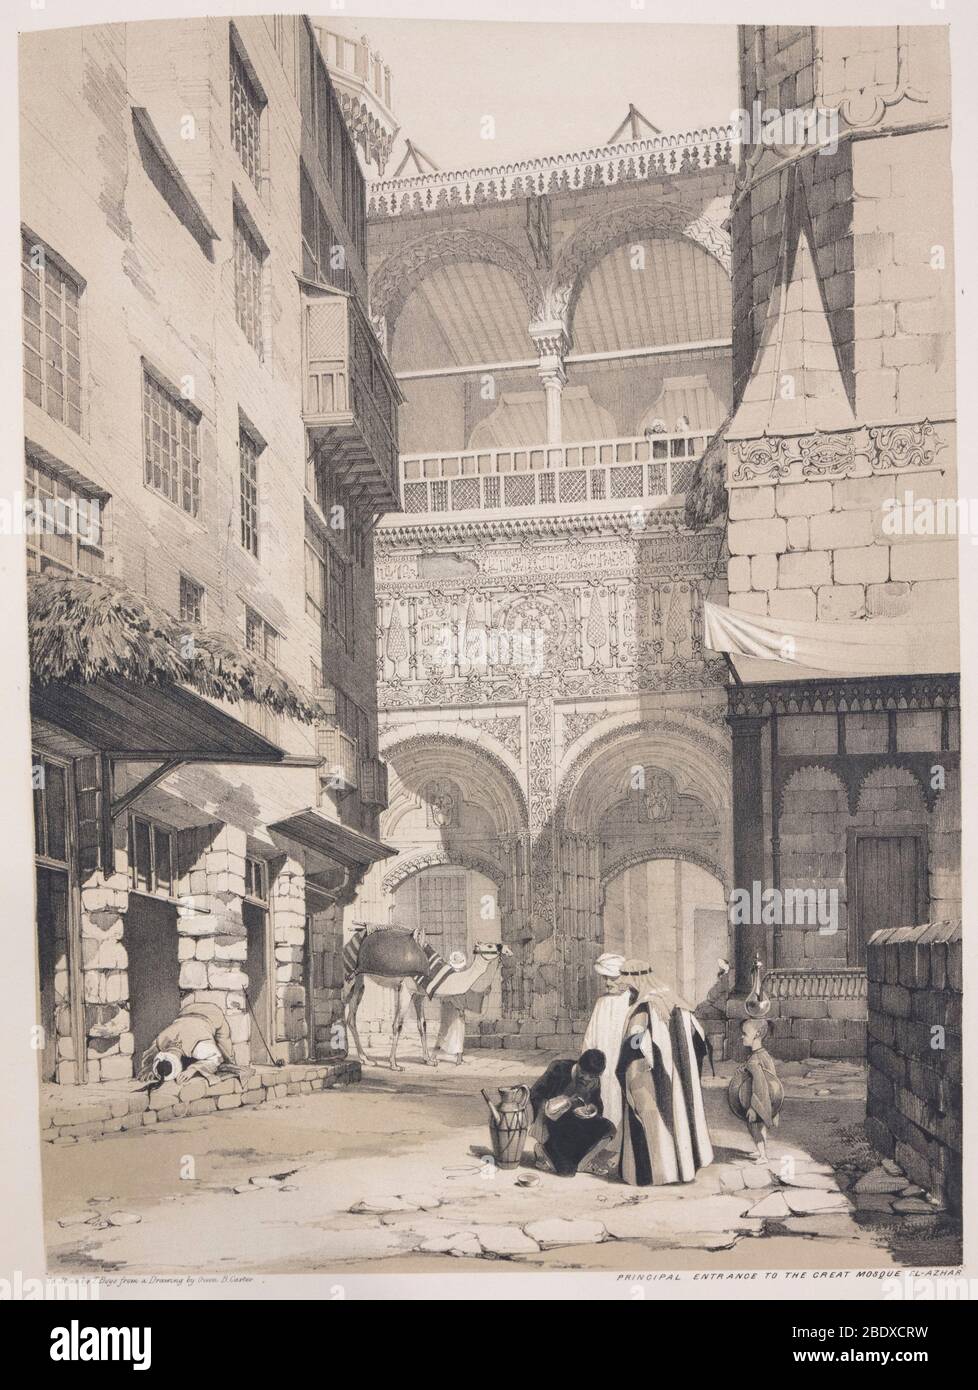 Entrée principale à la Grande Mosquée El-Azhar, Robert Hay, illustrations du Caire, Londres, 1840 Banque D'Images